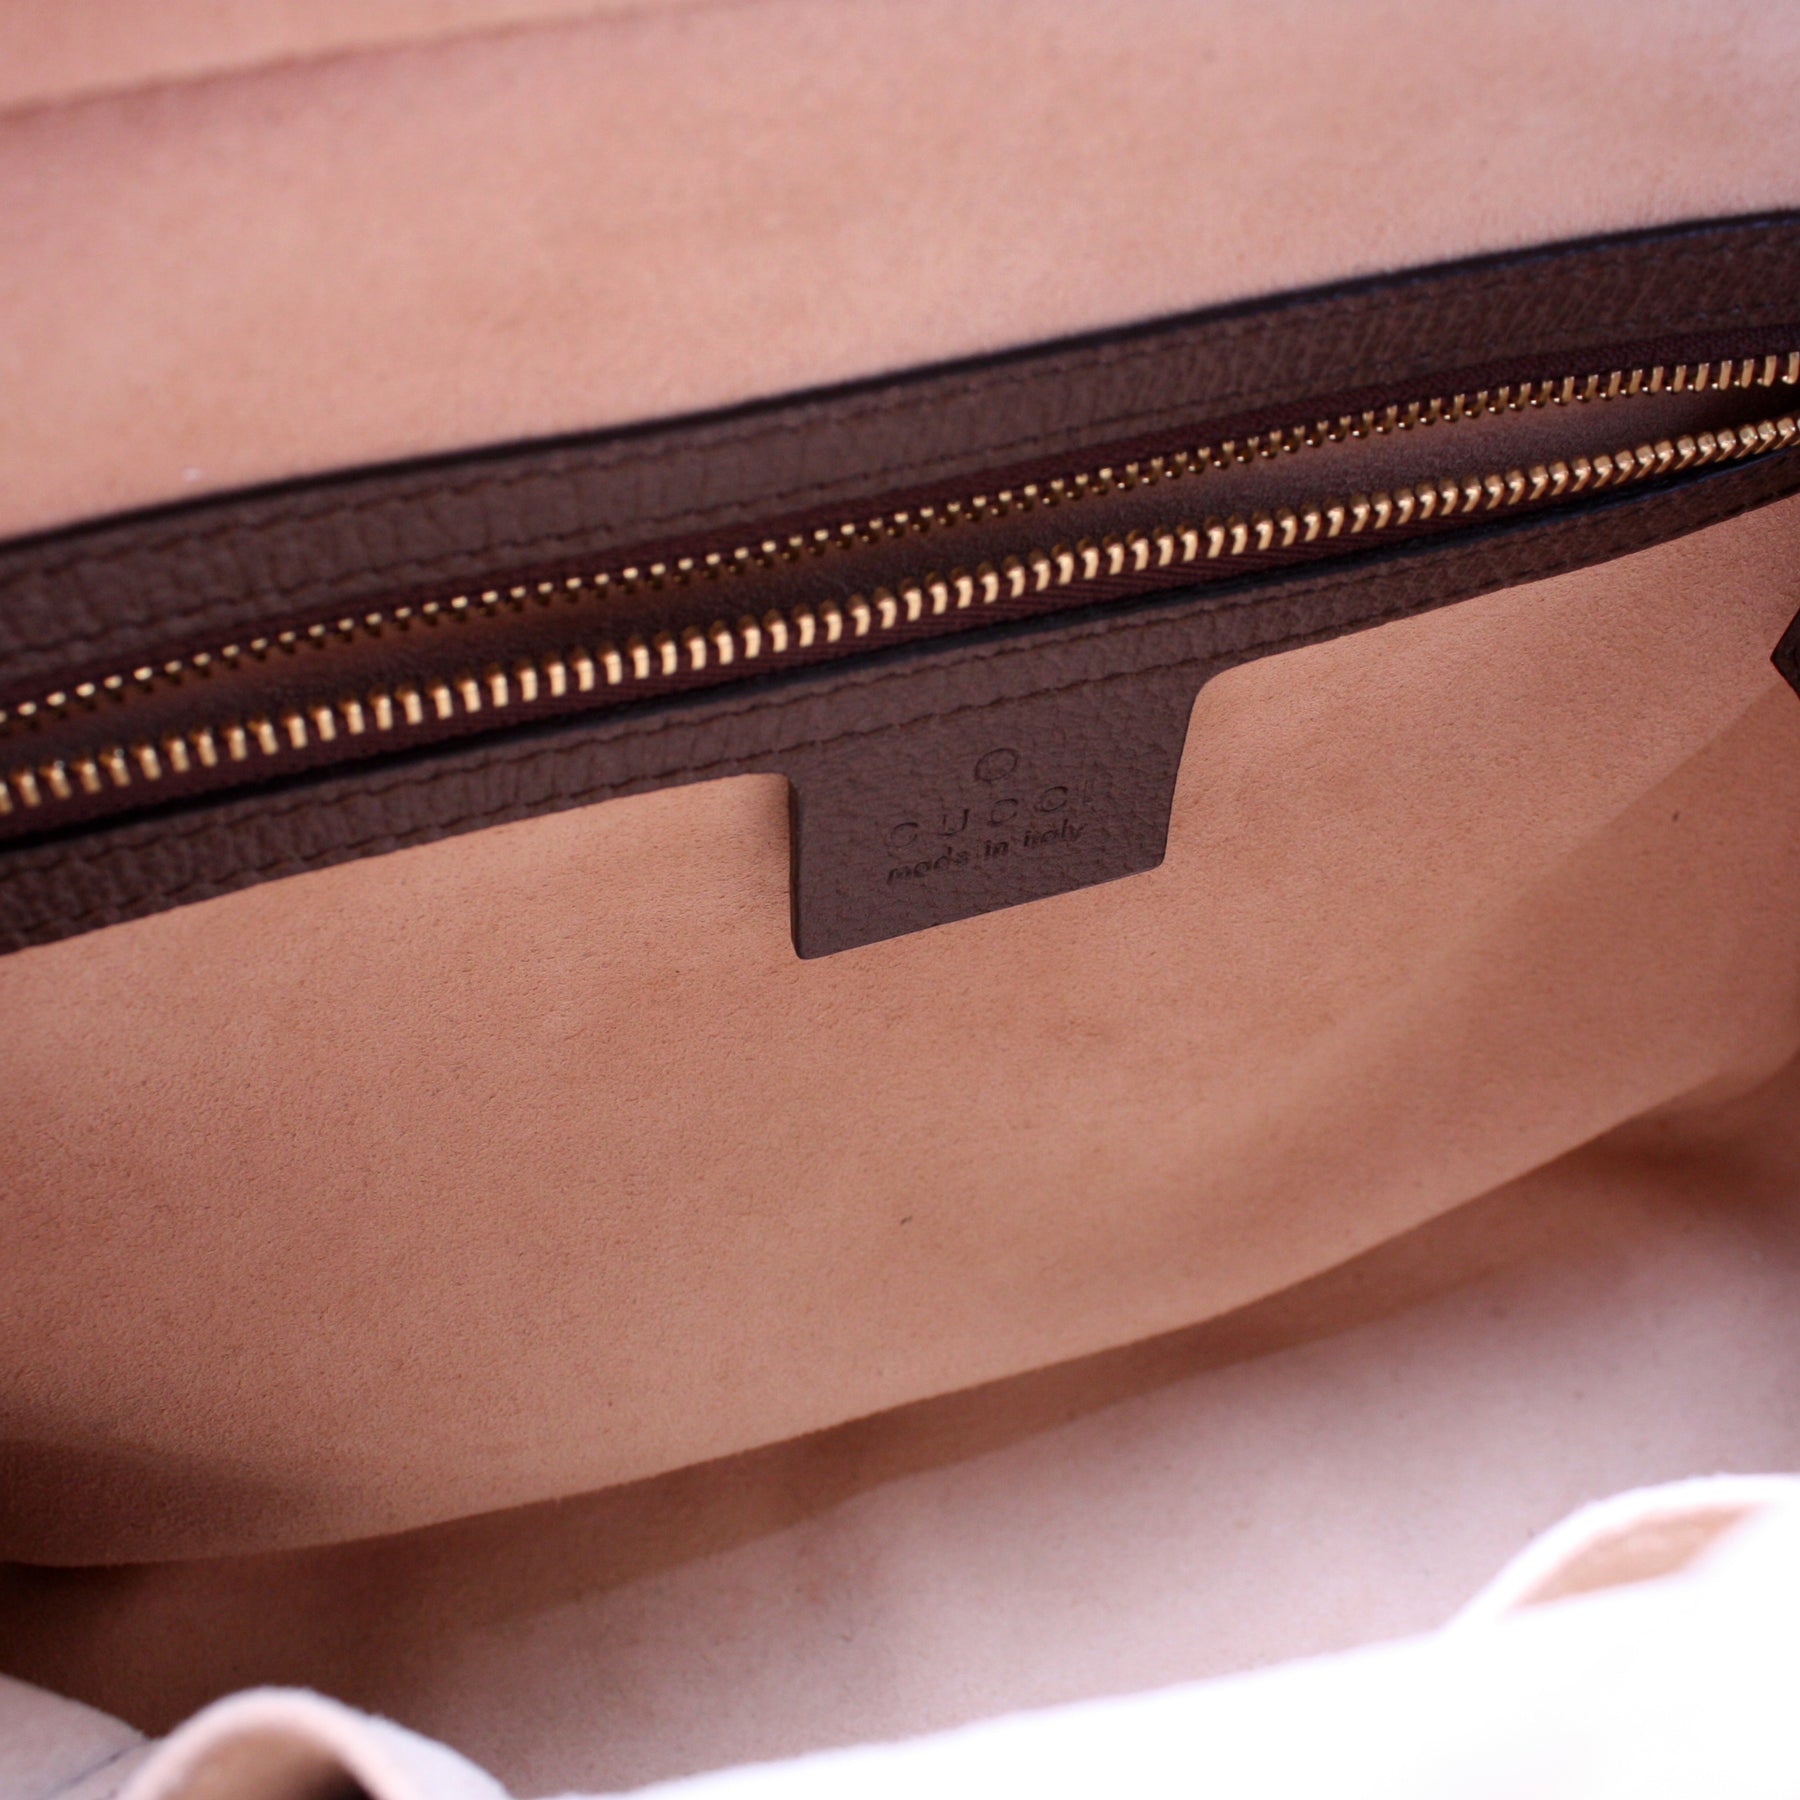 550622 Ophidia GG Small Shoulder Bag – Keeks Designer Handbags